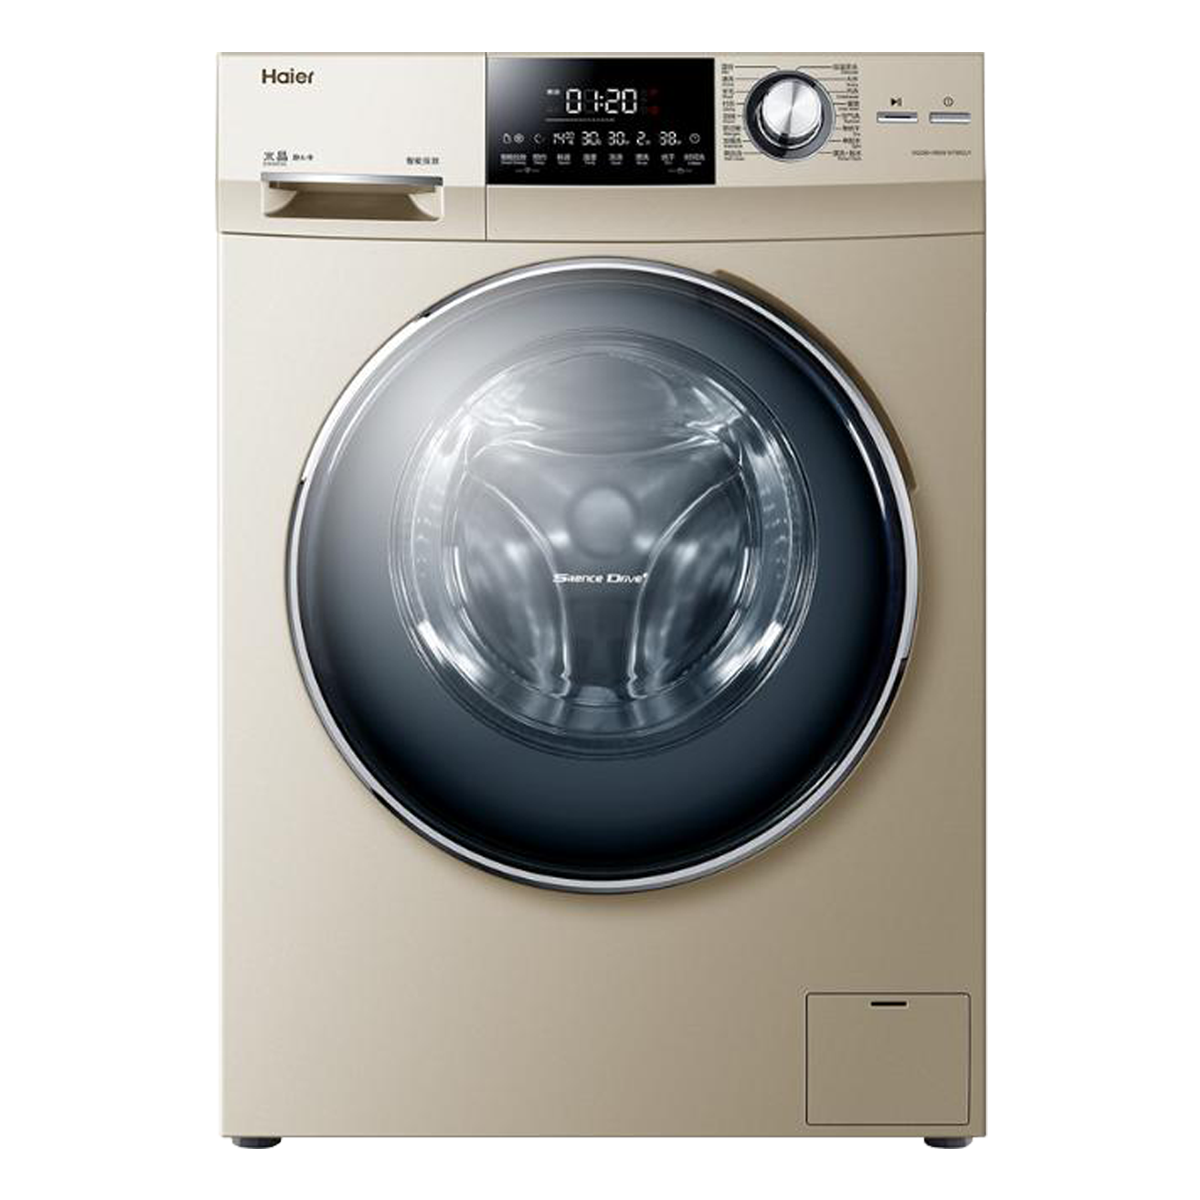 海尔Haier洗衣机 XQG80-HBDX14756GU1 说明书